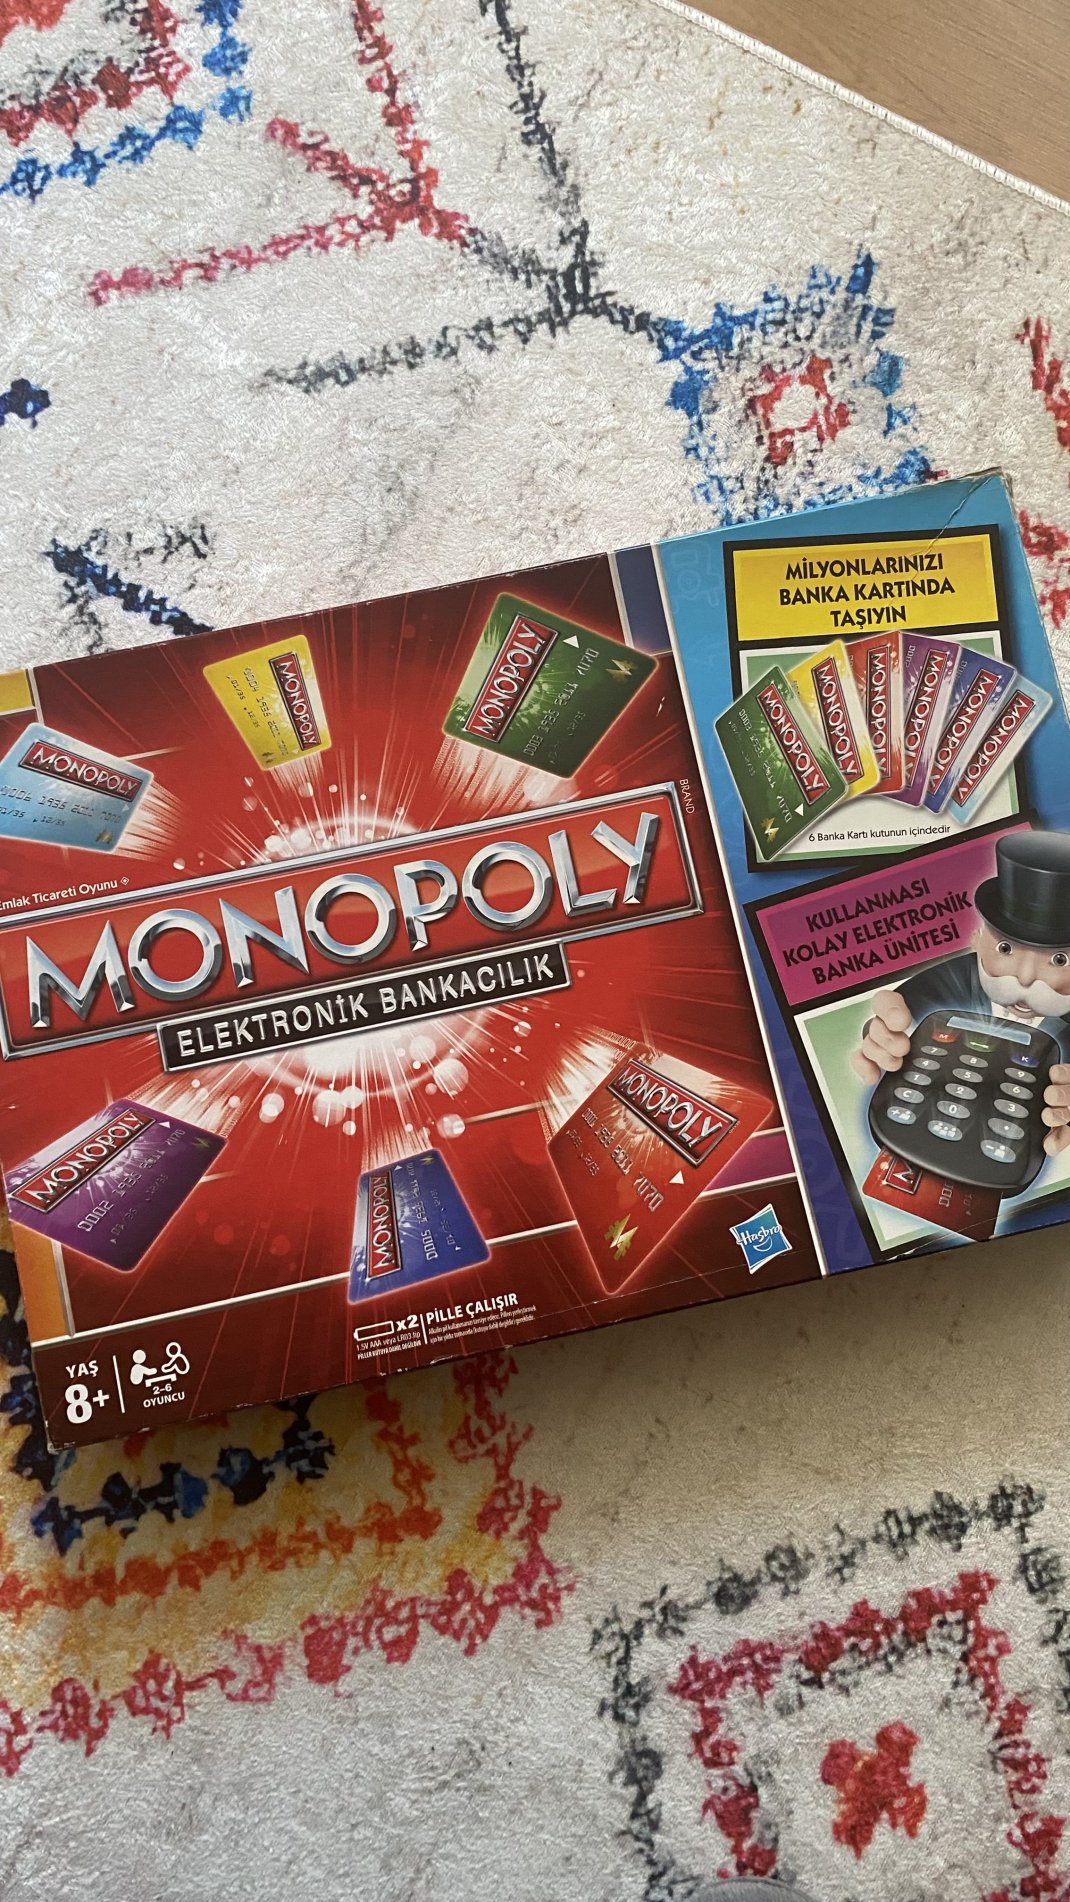 Monopoly Elektronik Bankacılık